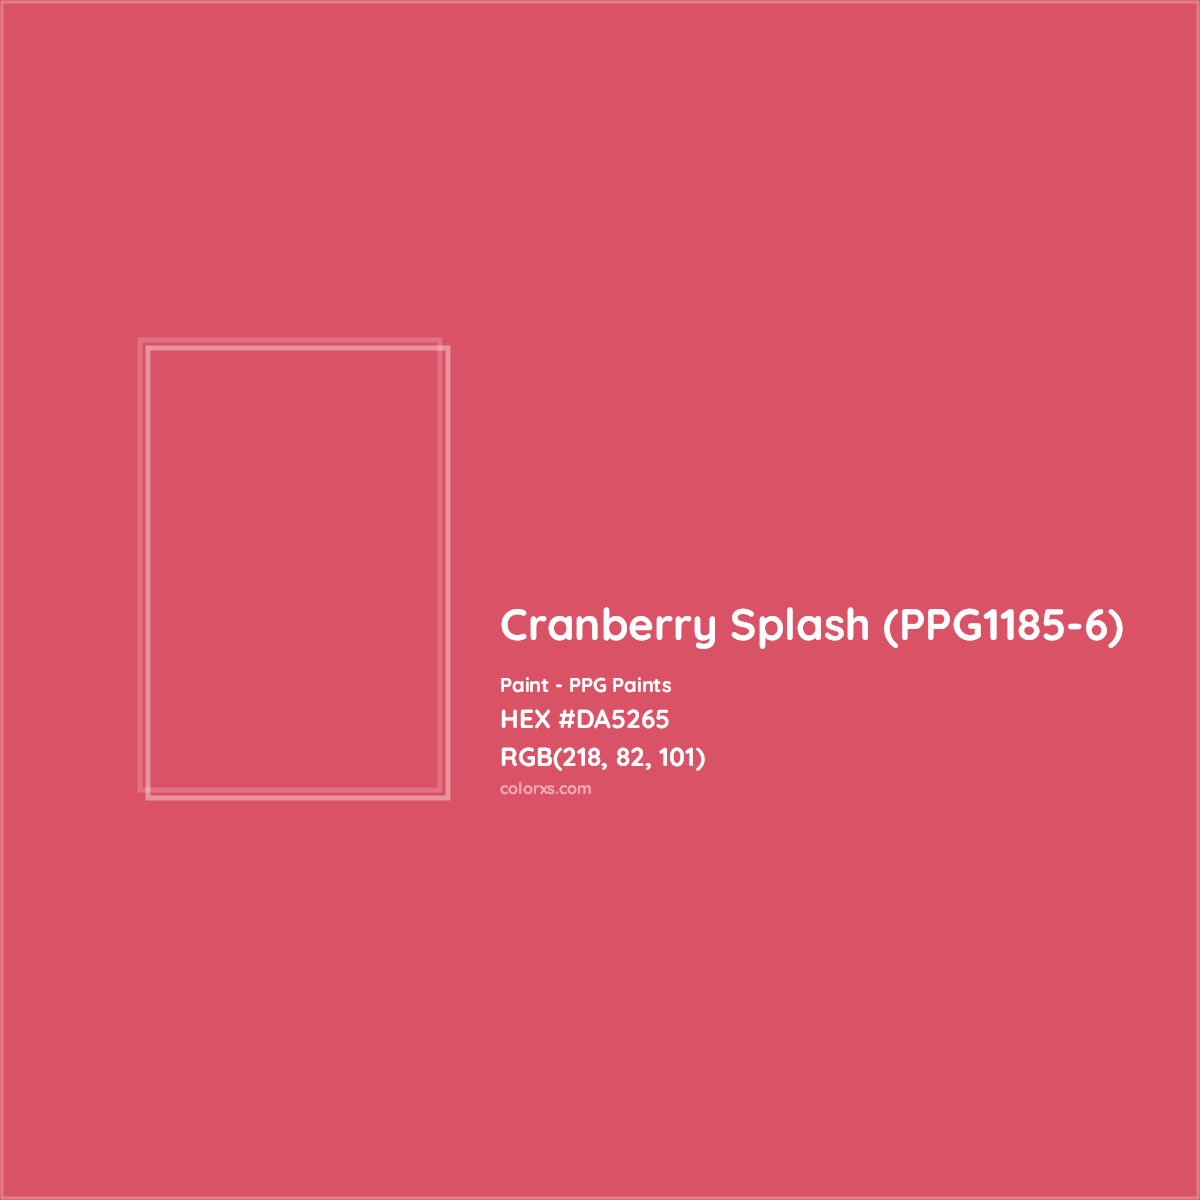 HEX #DA5265 Cranberry Splash (PPG1185-6) Paint PPG Paints - Color Code